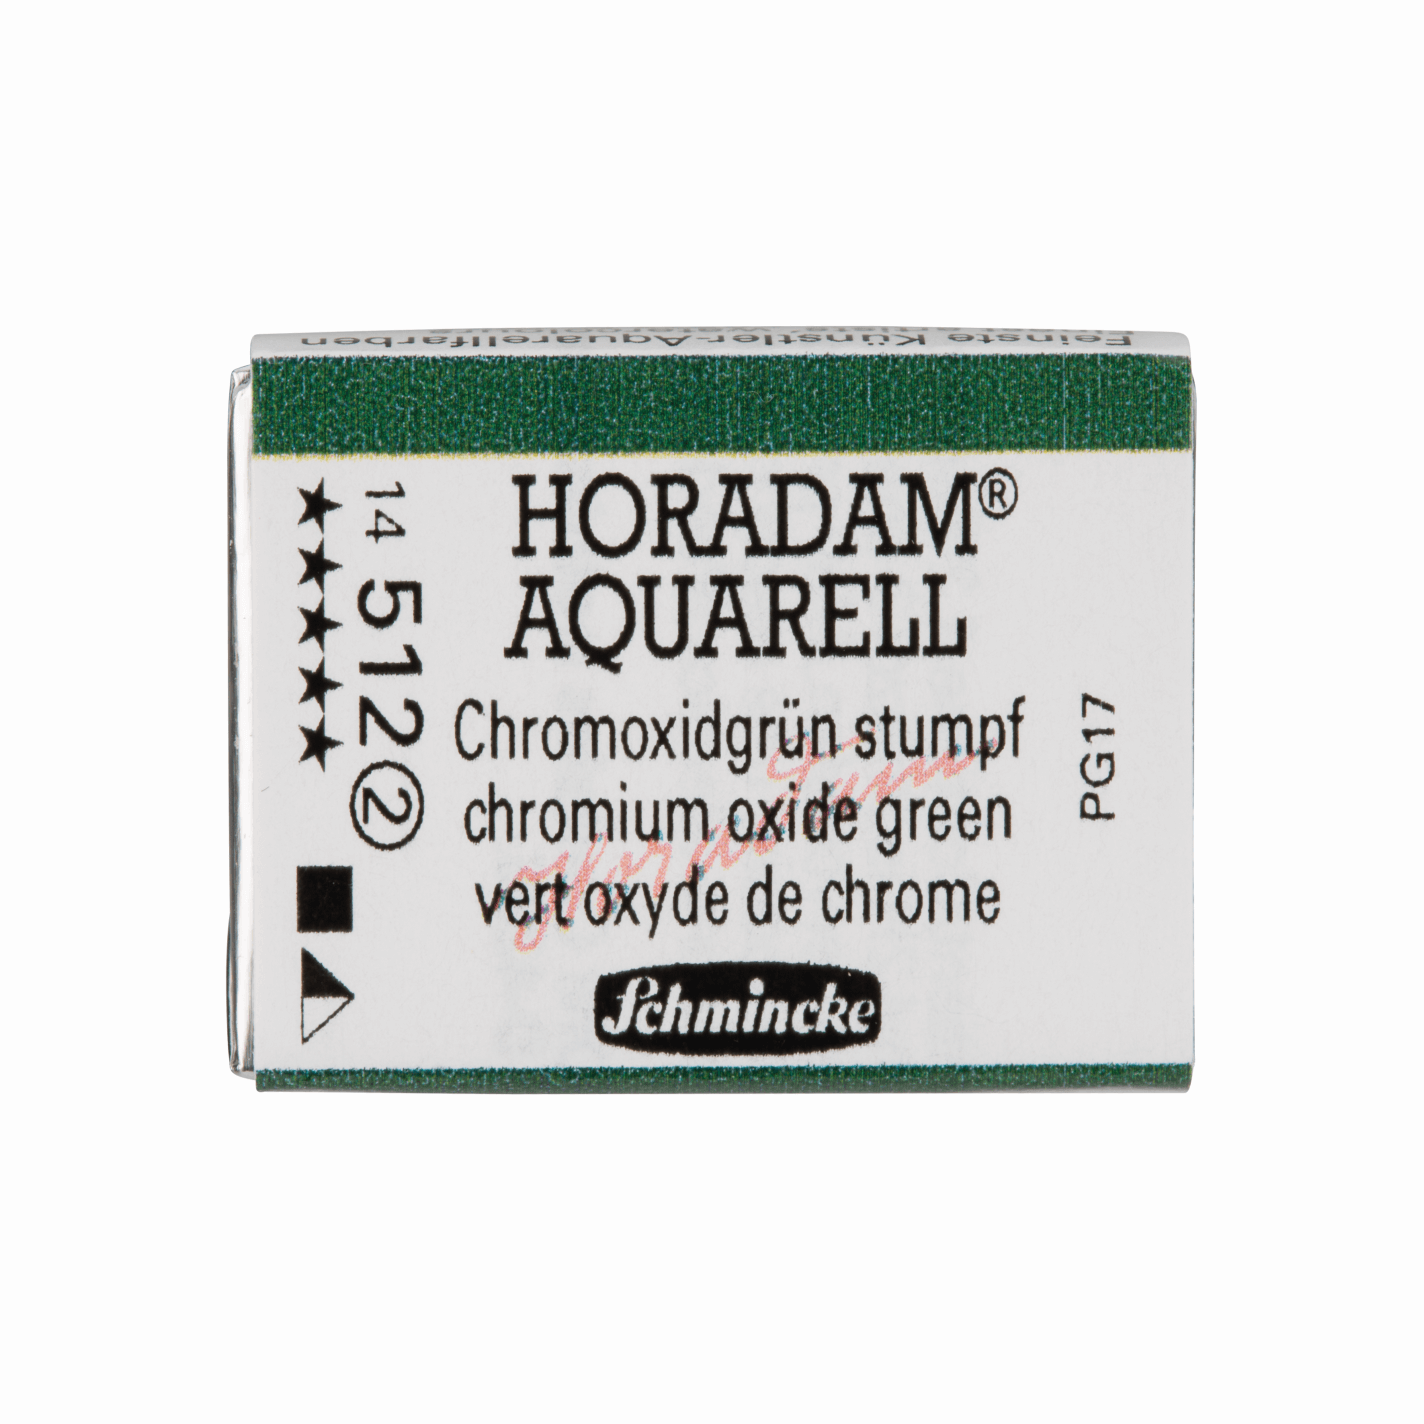 Schmincke Horadam Aquarell pans 1/1 pan Chromium Oxide Green